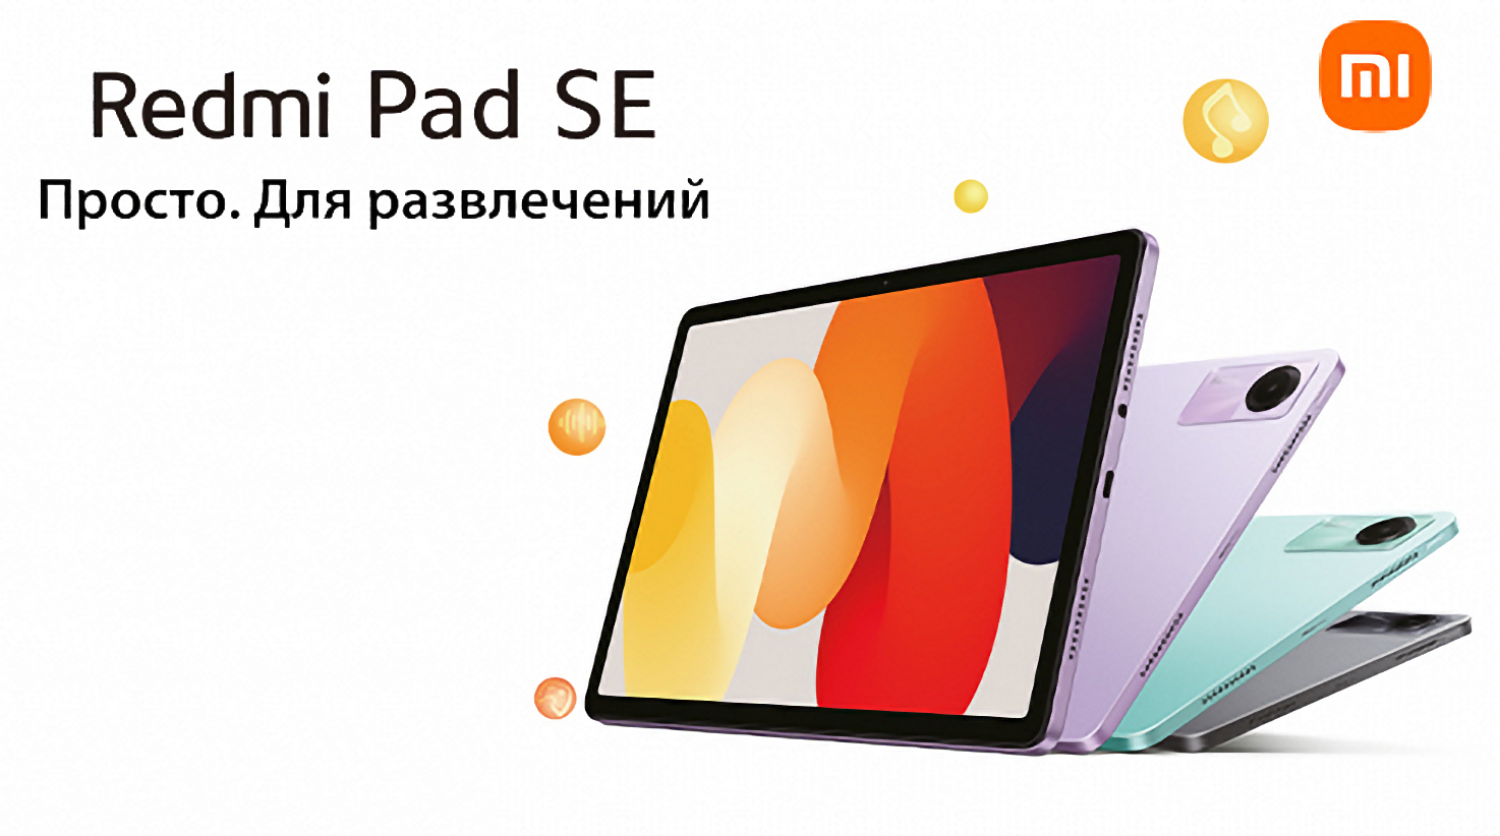 В Россию привезли недорогой планшет Xiaomi Redmi Pad SE спустя месяц после анонса